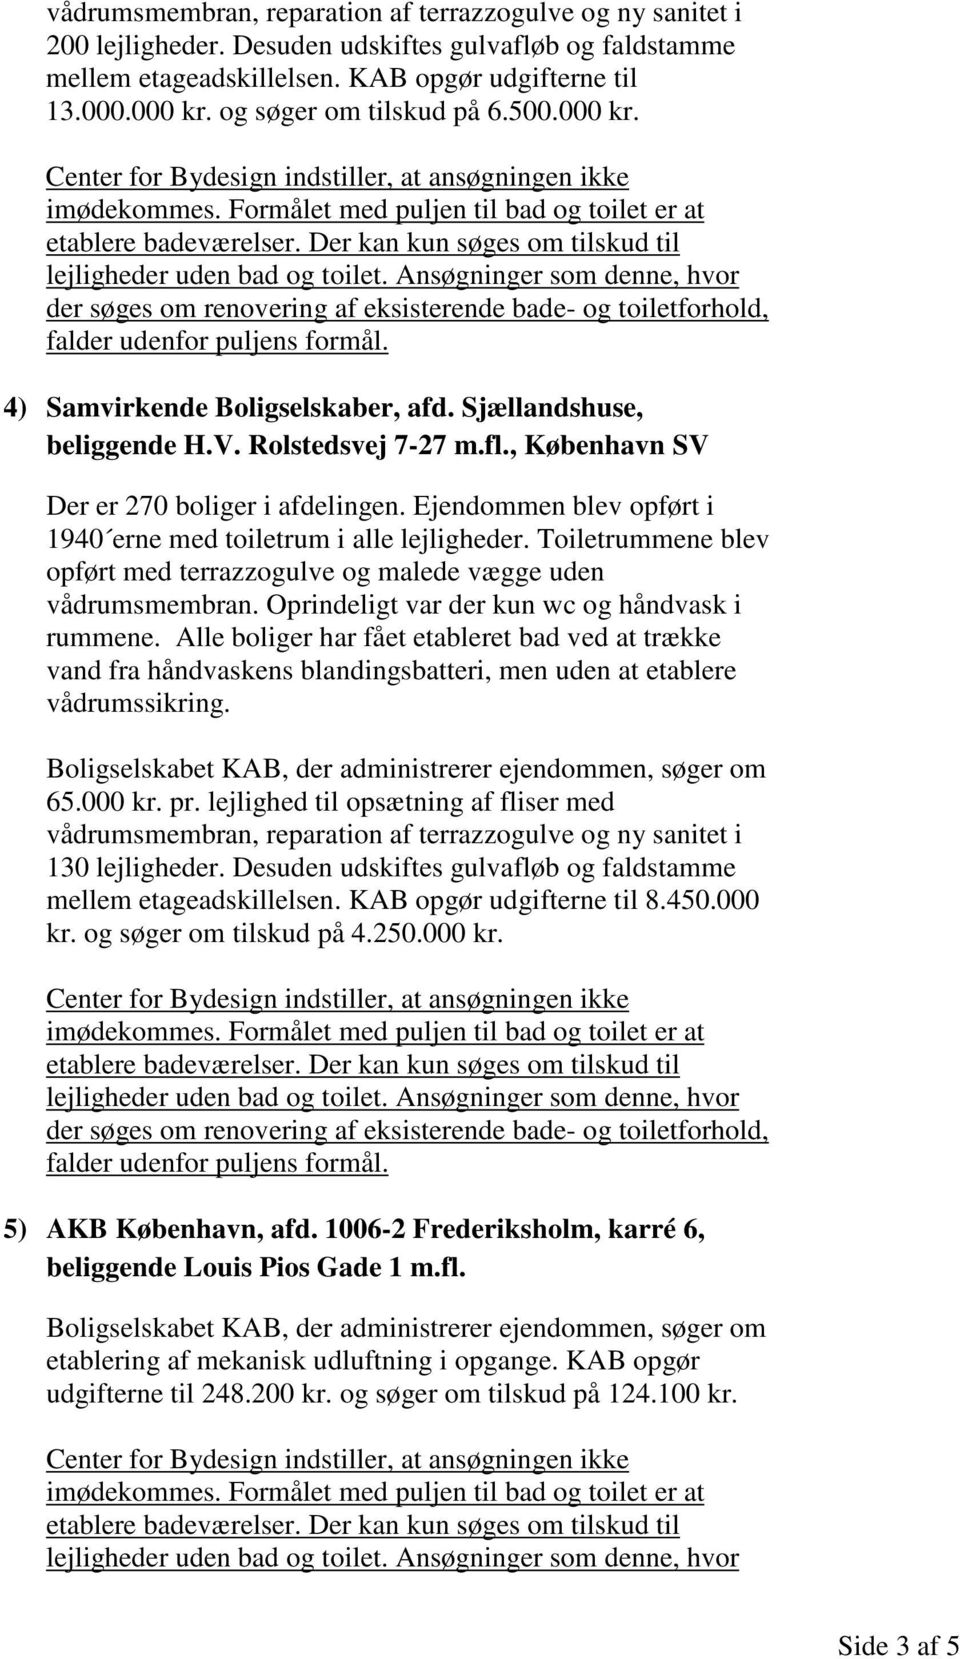 Desuden udskiftes gulvafløb og faldstamme mellem etageadskillelsen. KAB opgør udgifterne til 8.450.000 kr. og søger om tilskud på 4.250.000 kr. 5) AKB København, afd.